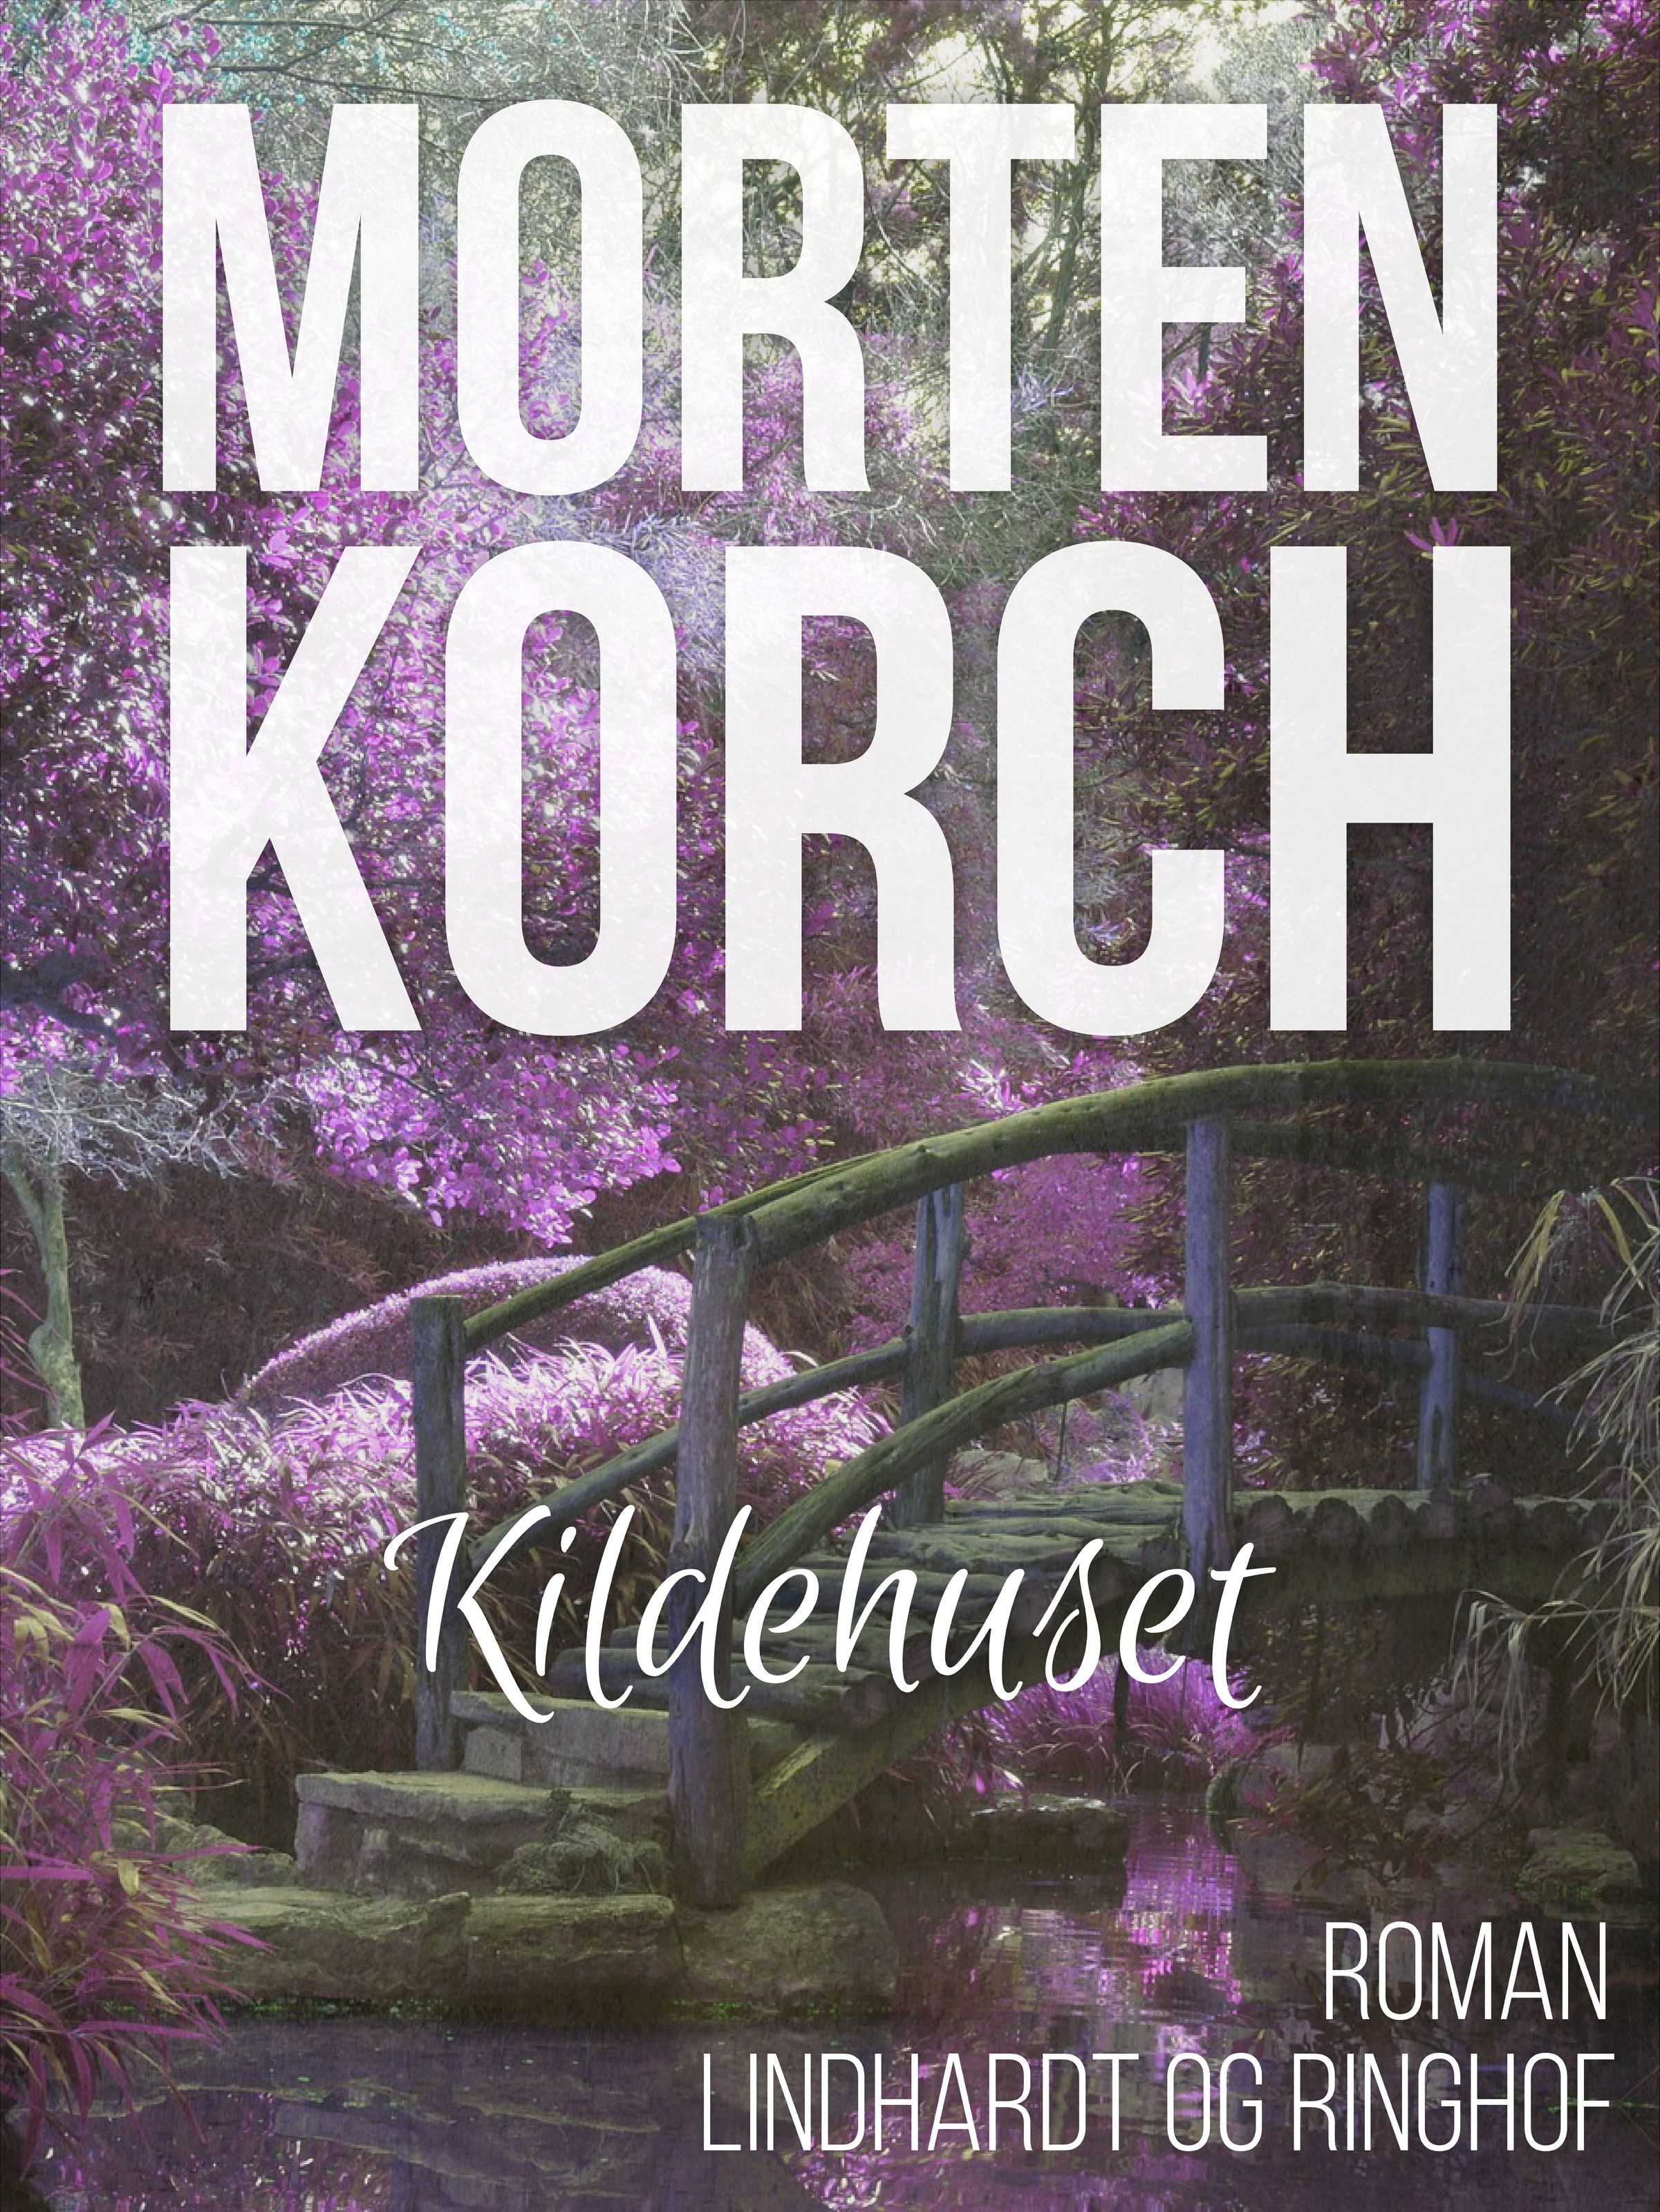 Kildehuset, ljudbok av Morten Korch